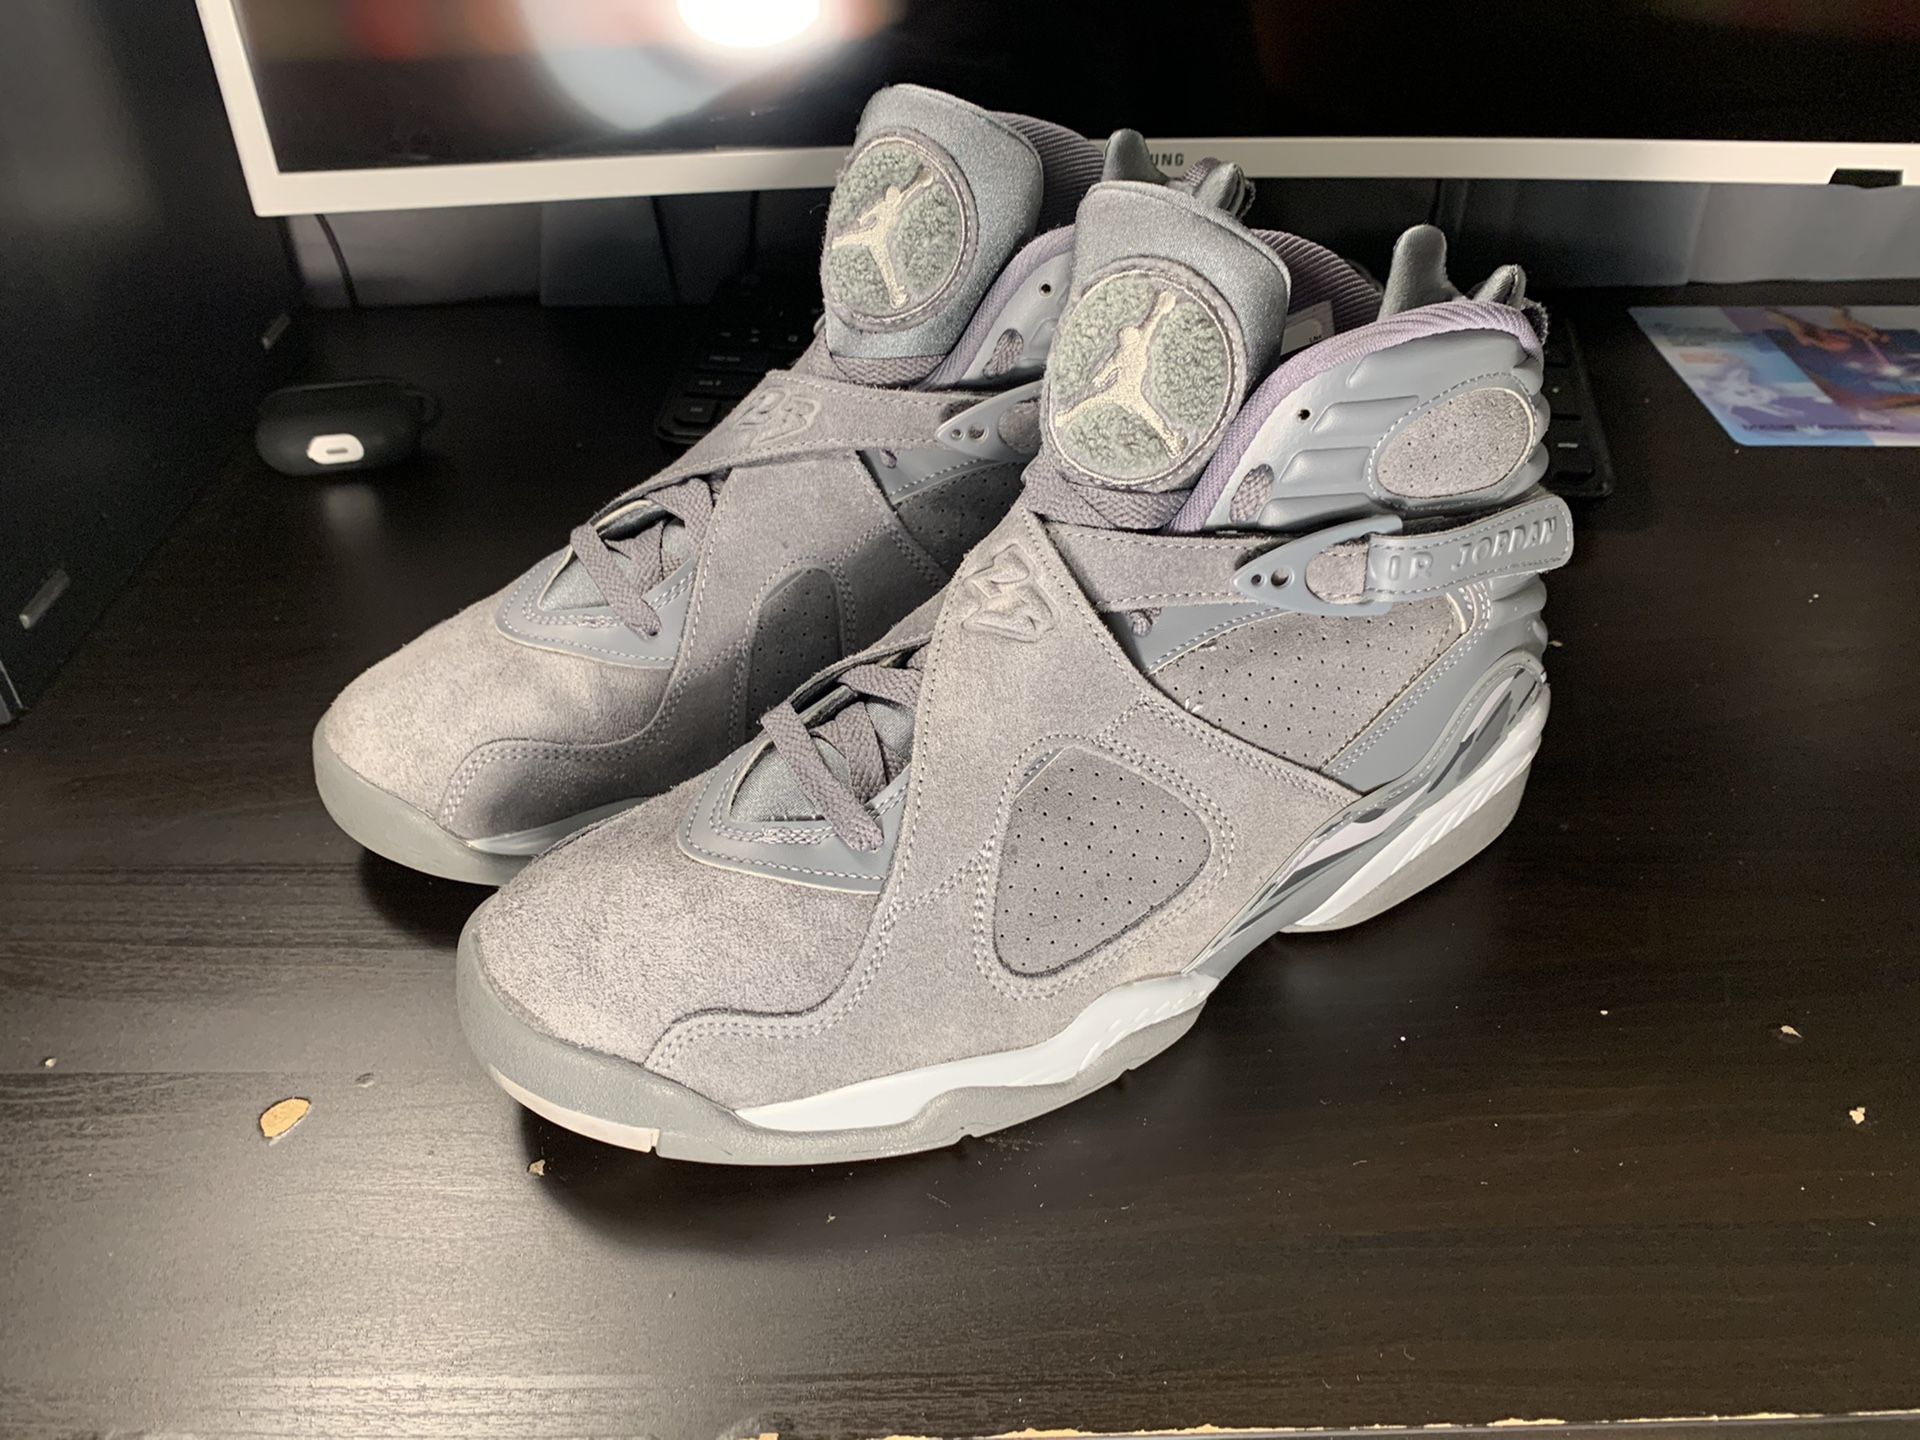 Jordan 8 cool grays